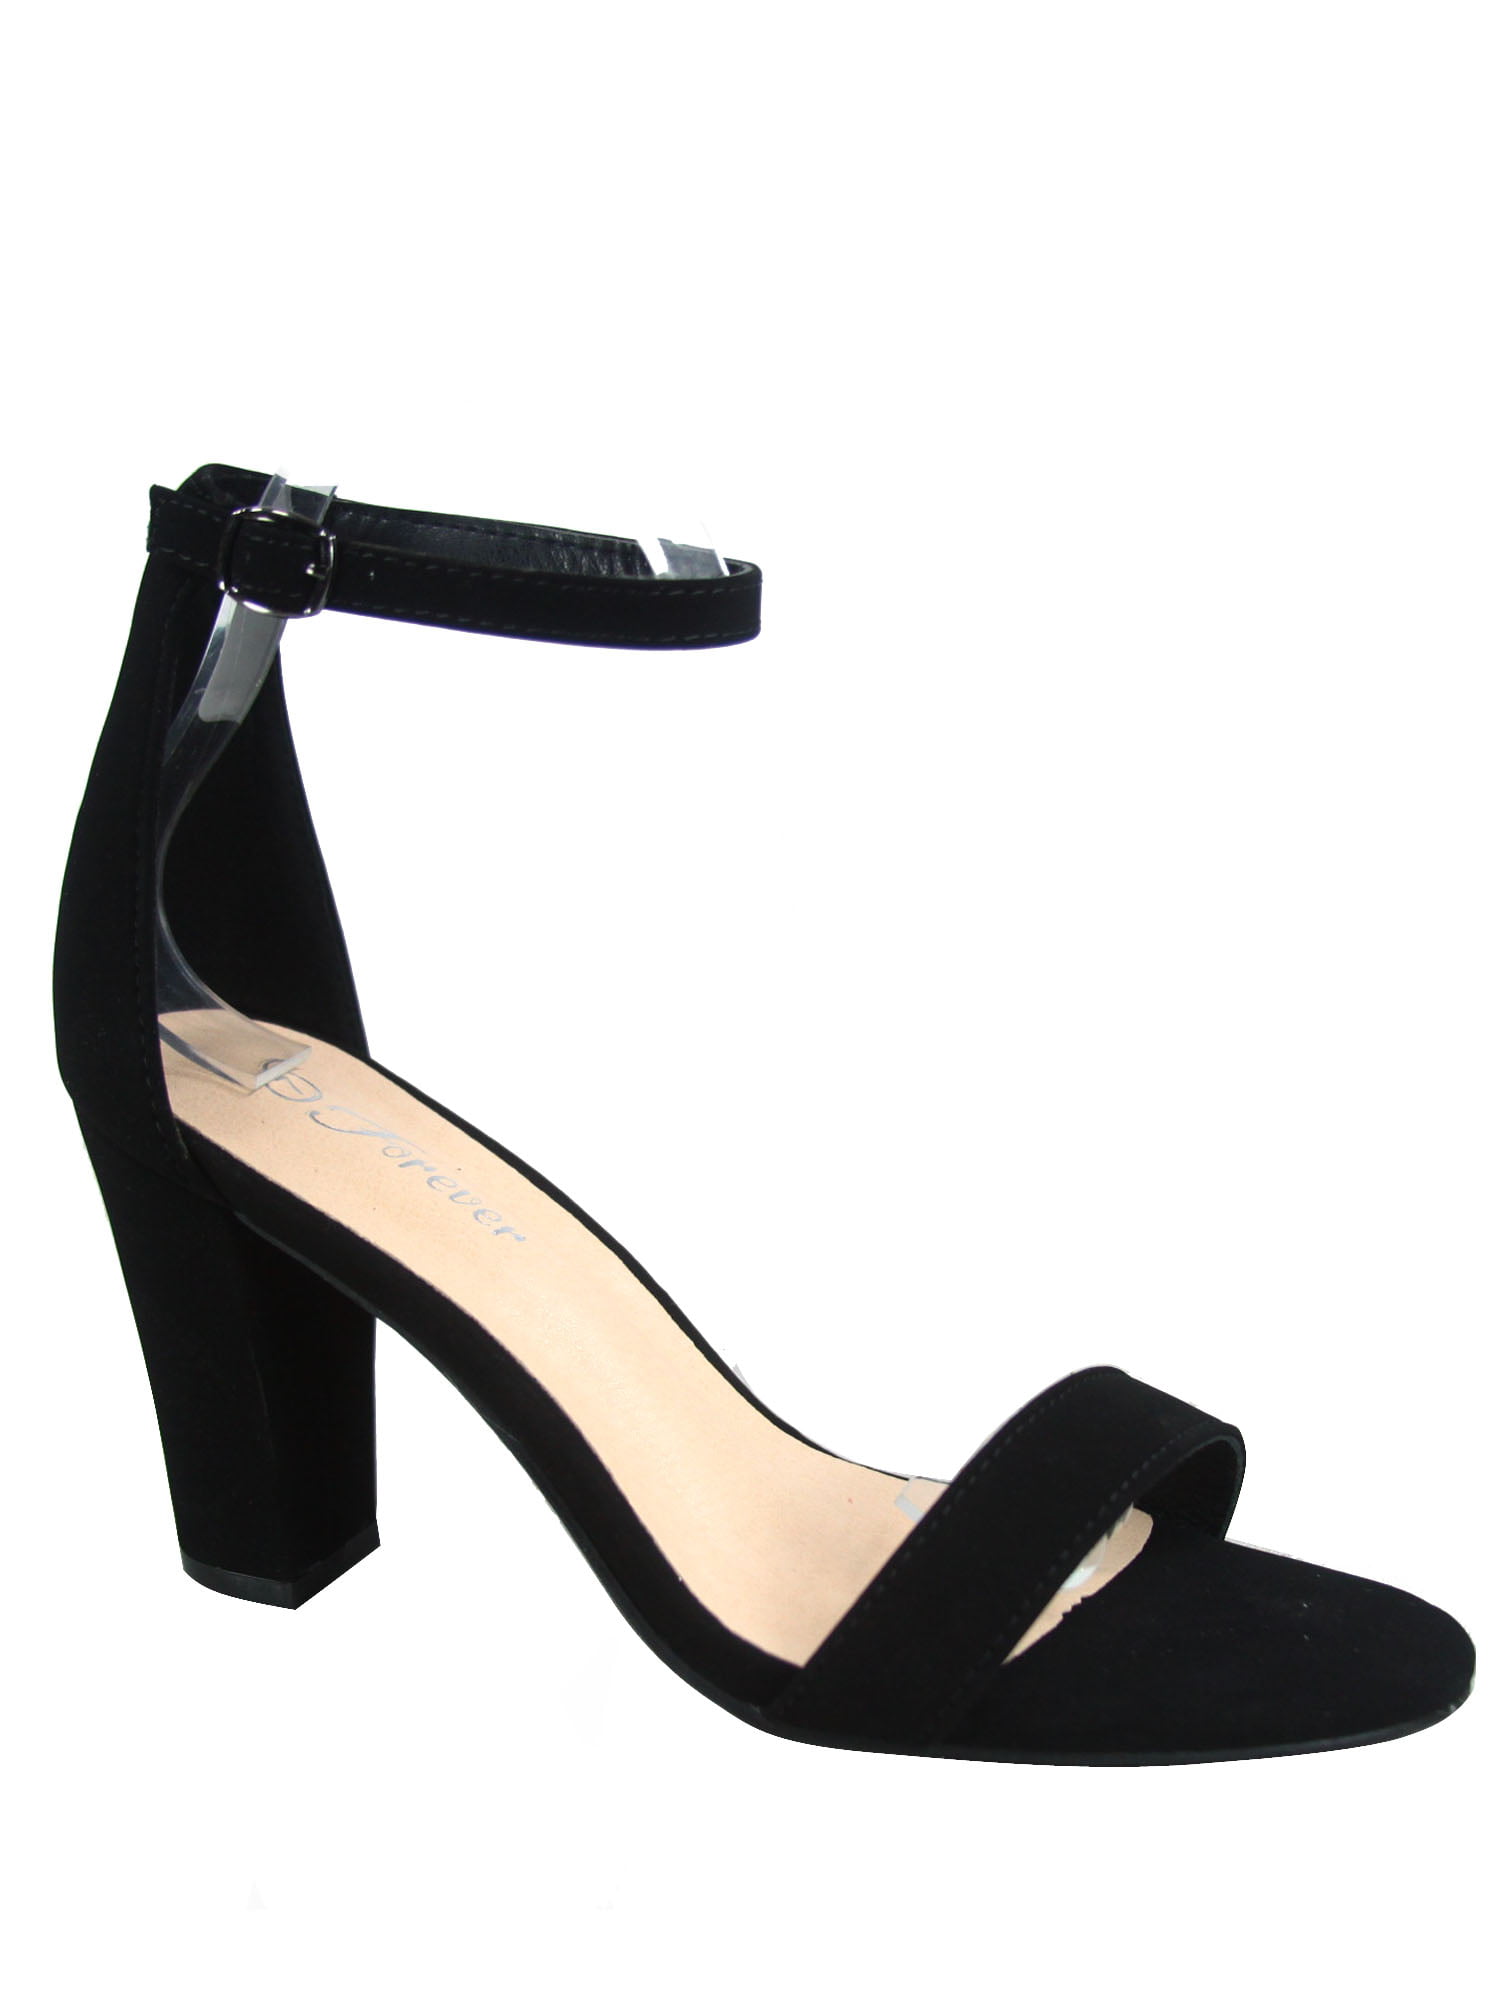 Amazon.com: Women's 1 Inch Heel Shoes